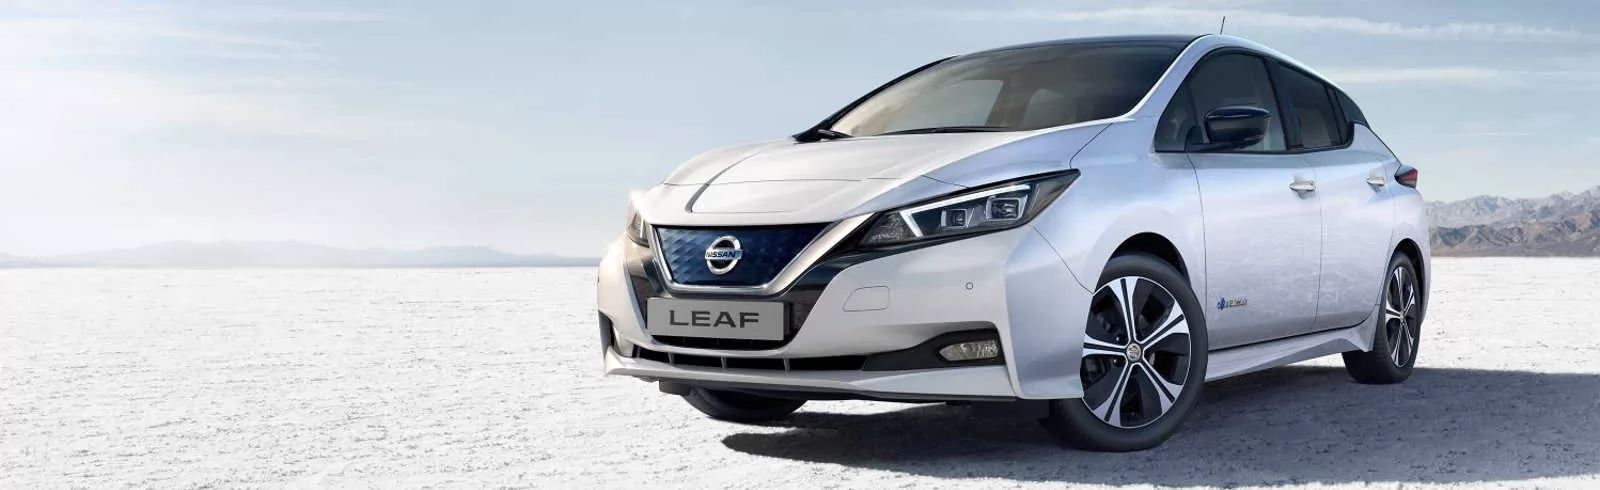 Nissan leaf blanco